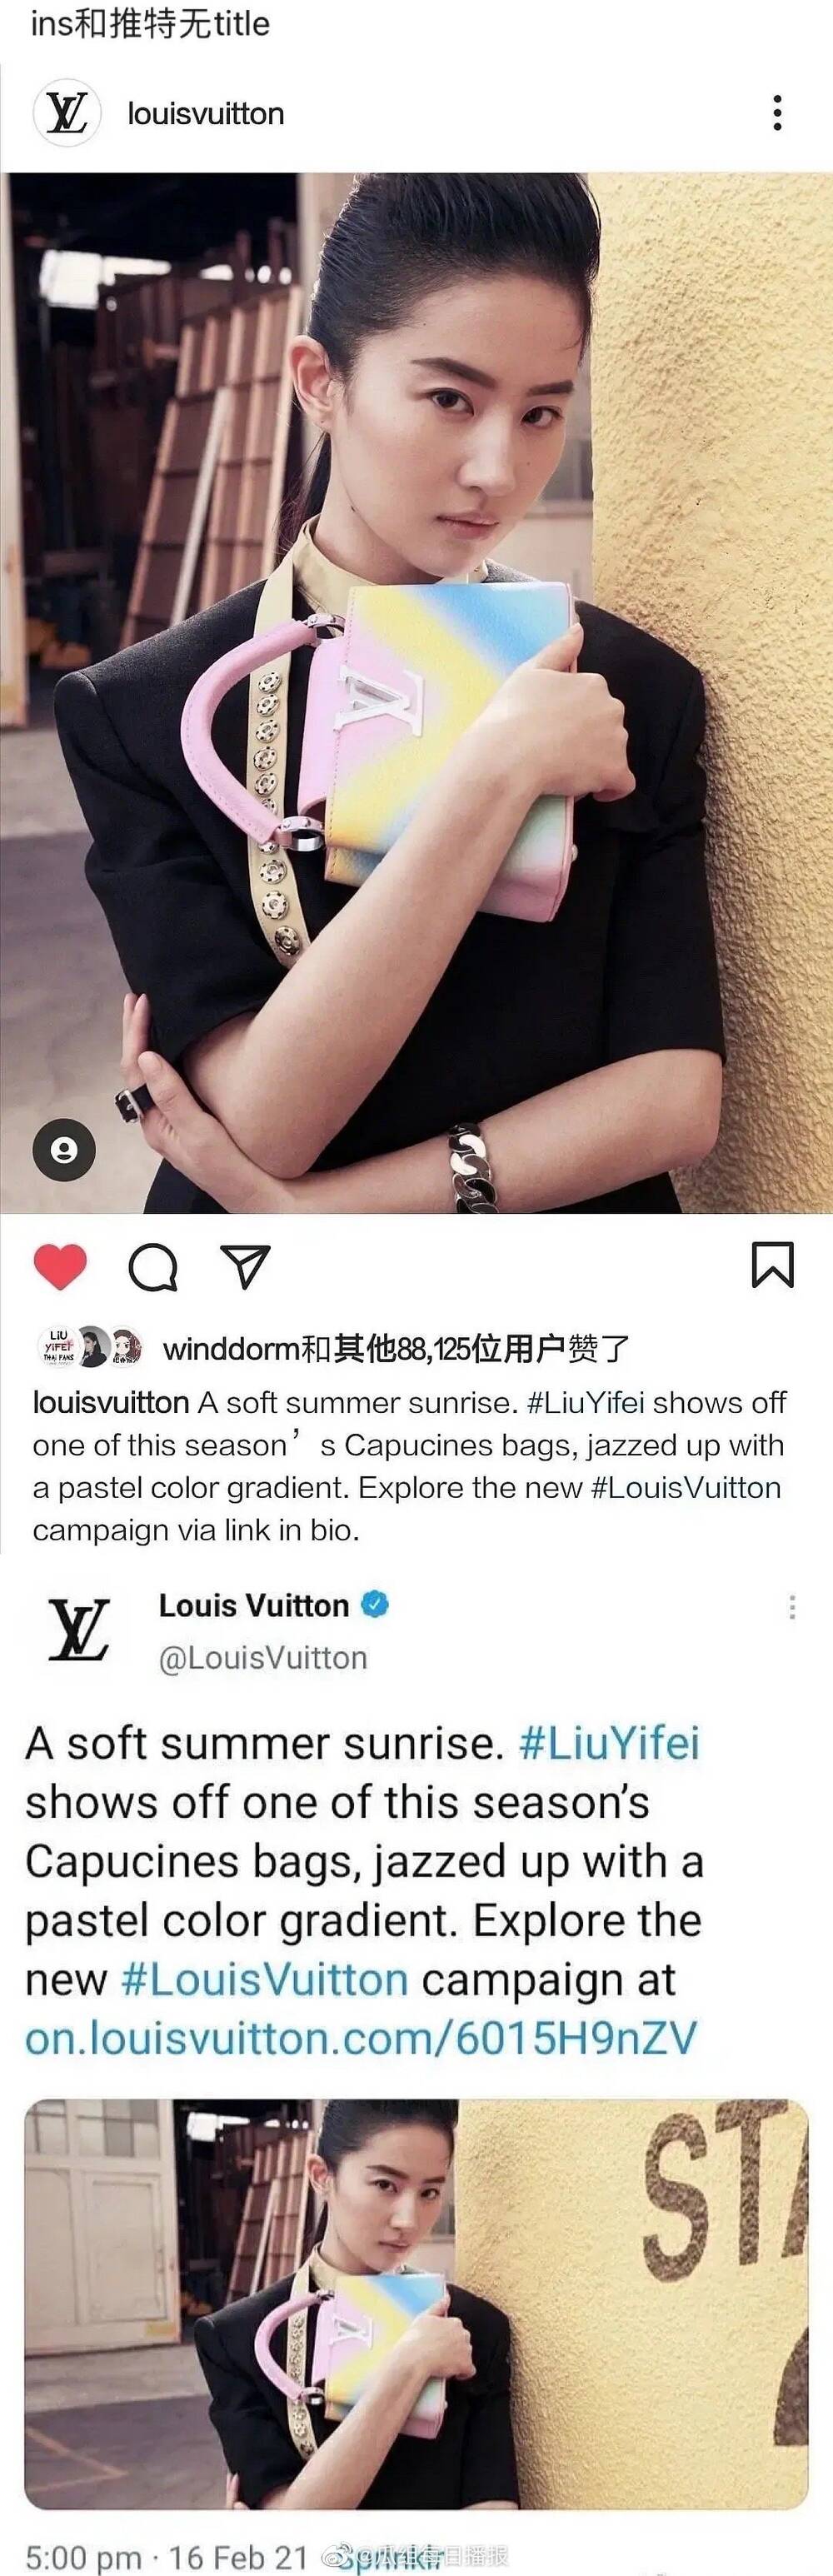 Instagram chính thức của Louis Vuitton cũng đã đăng tải hình ảnh quảng bá của Lưu Diệc Phi trễ hơn nhiều ngày so với Weibo,